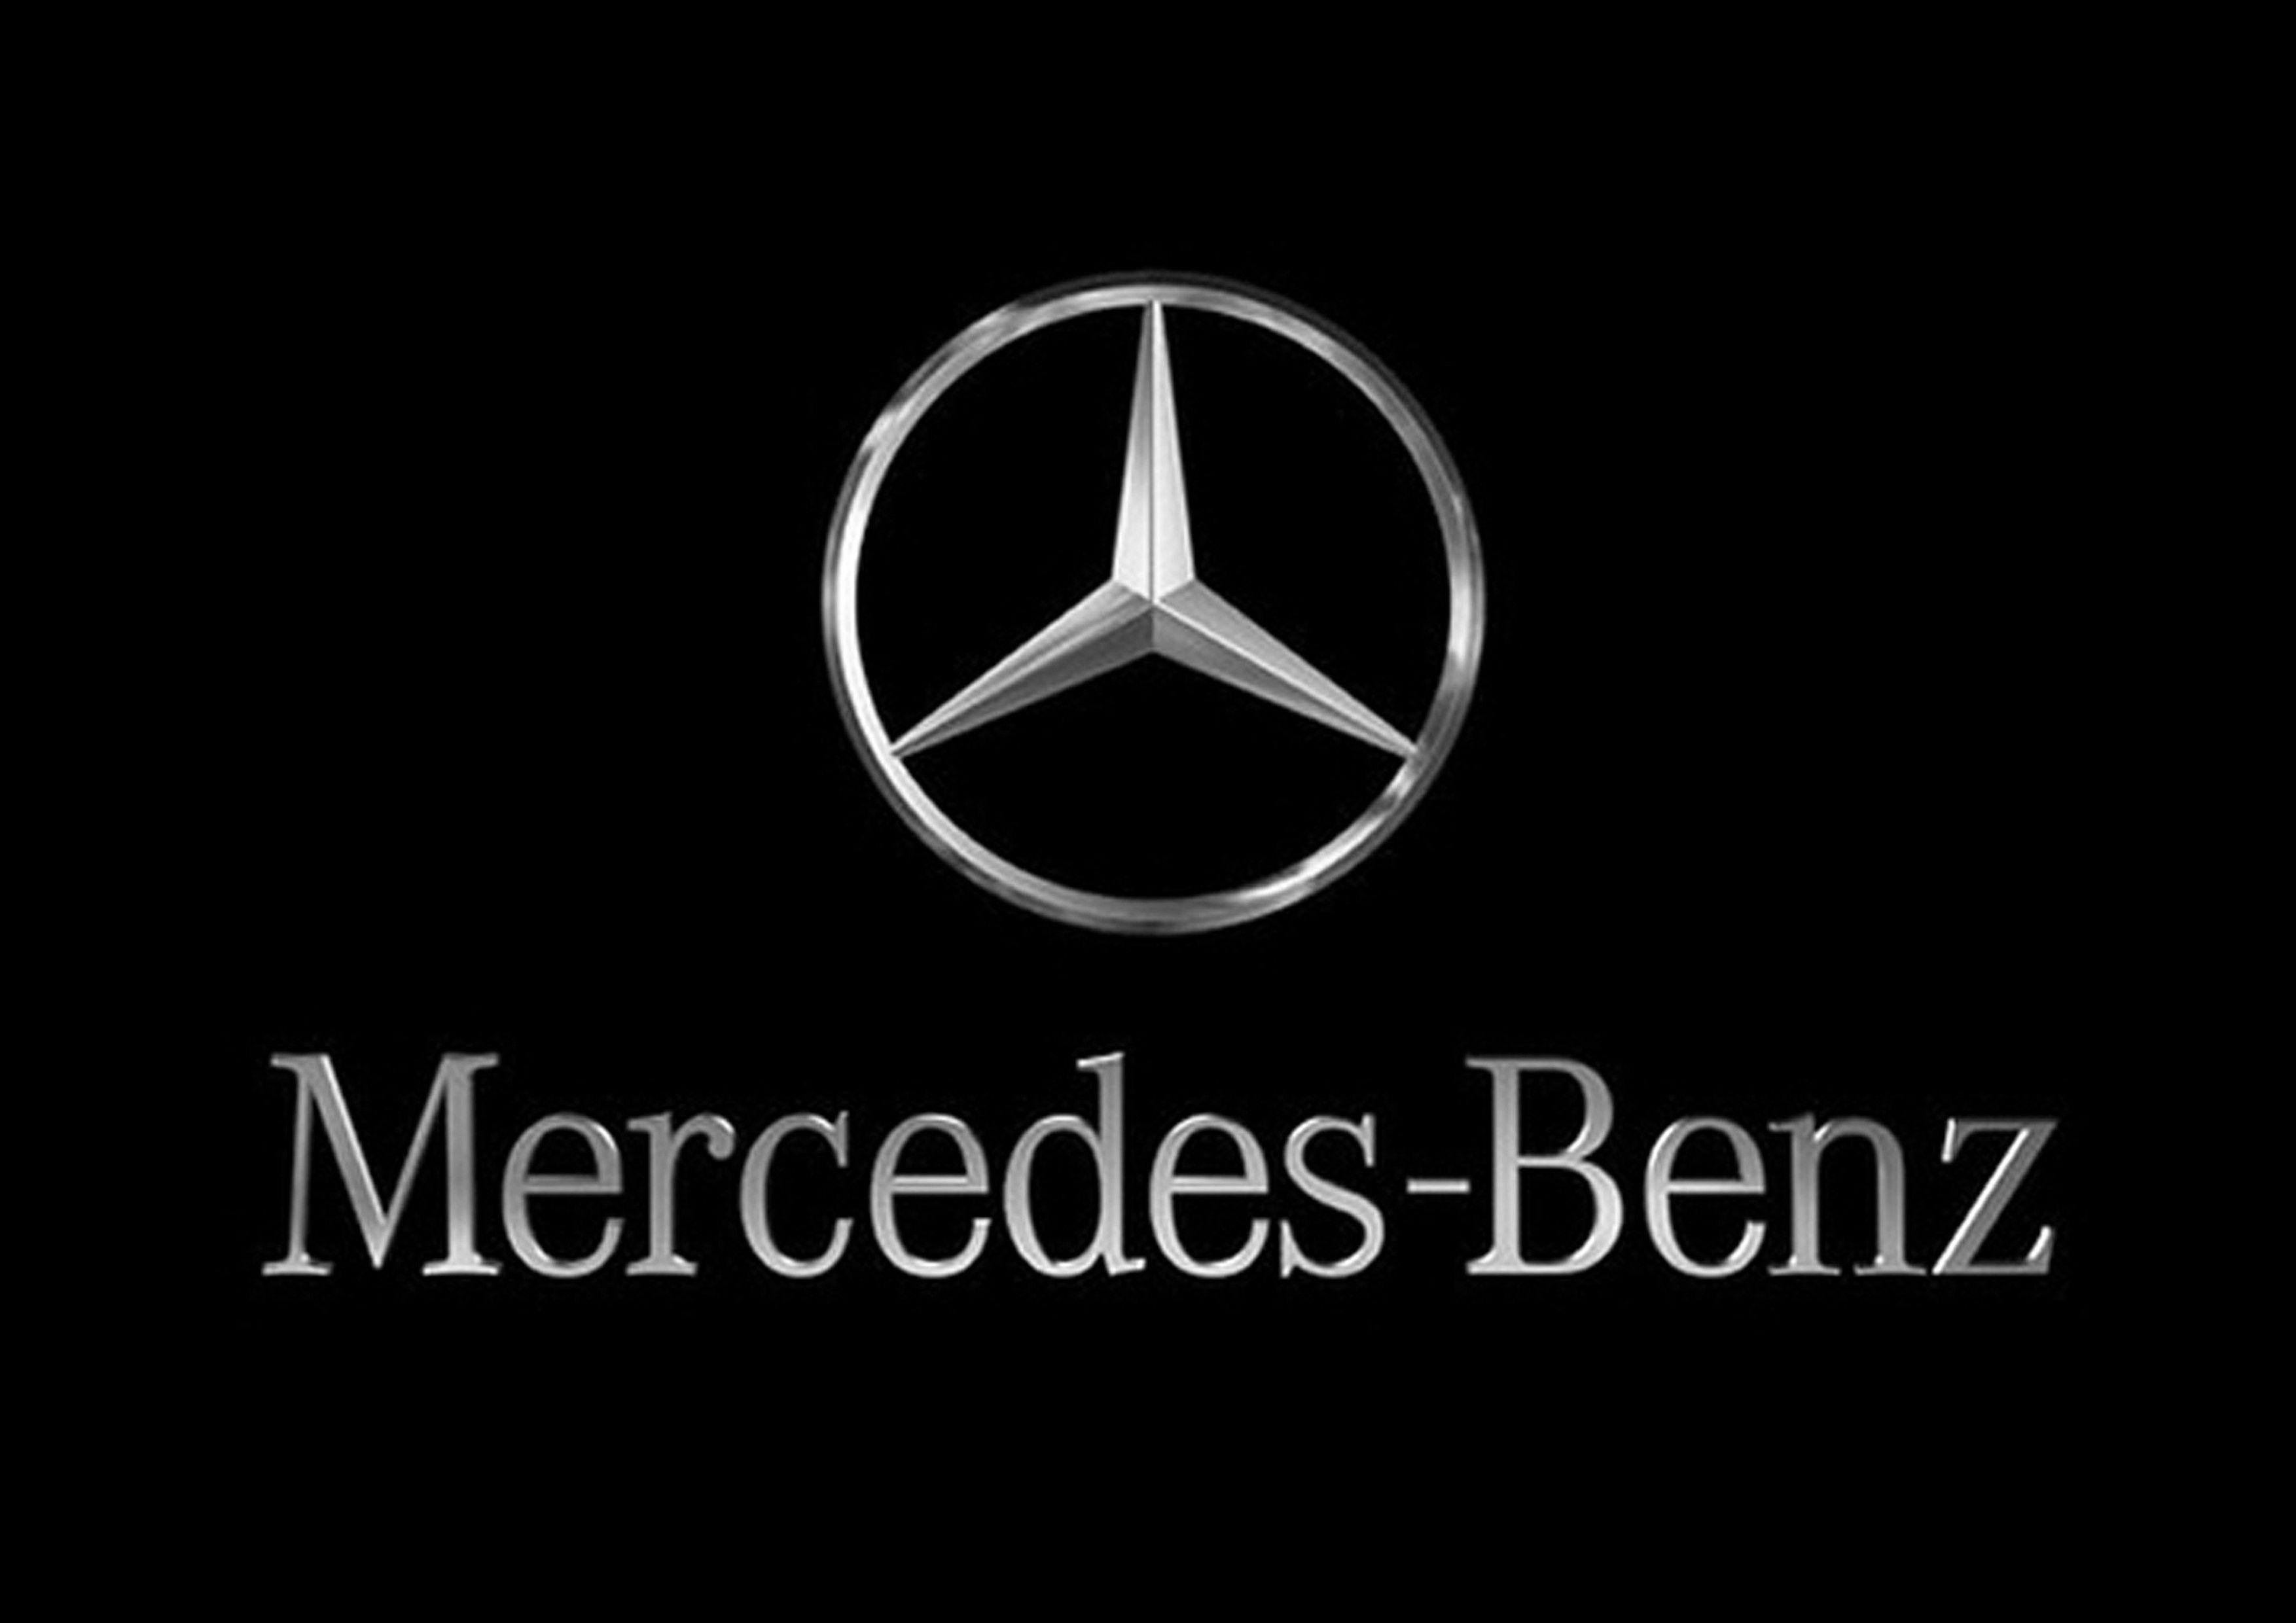 Logo Xe Mercedes dát vàng 24k